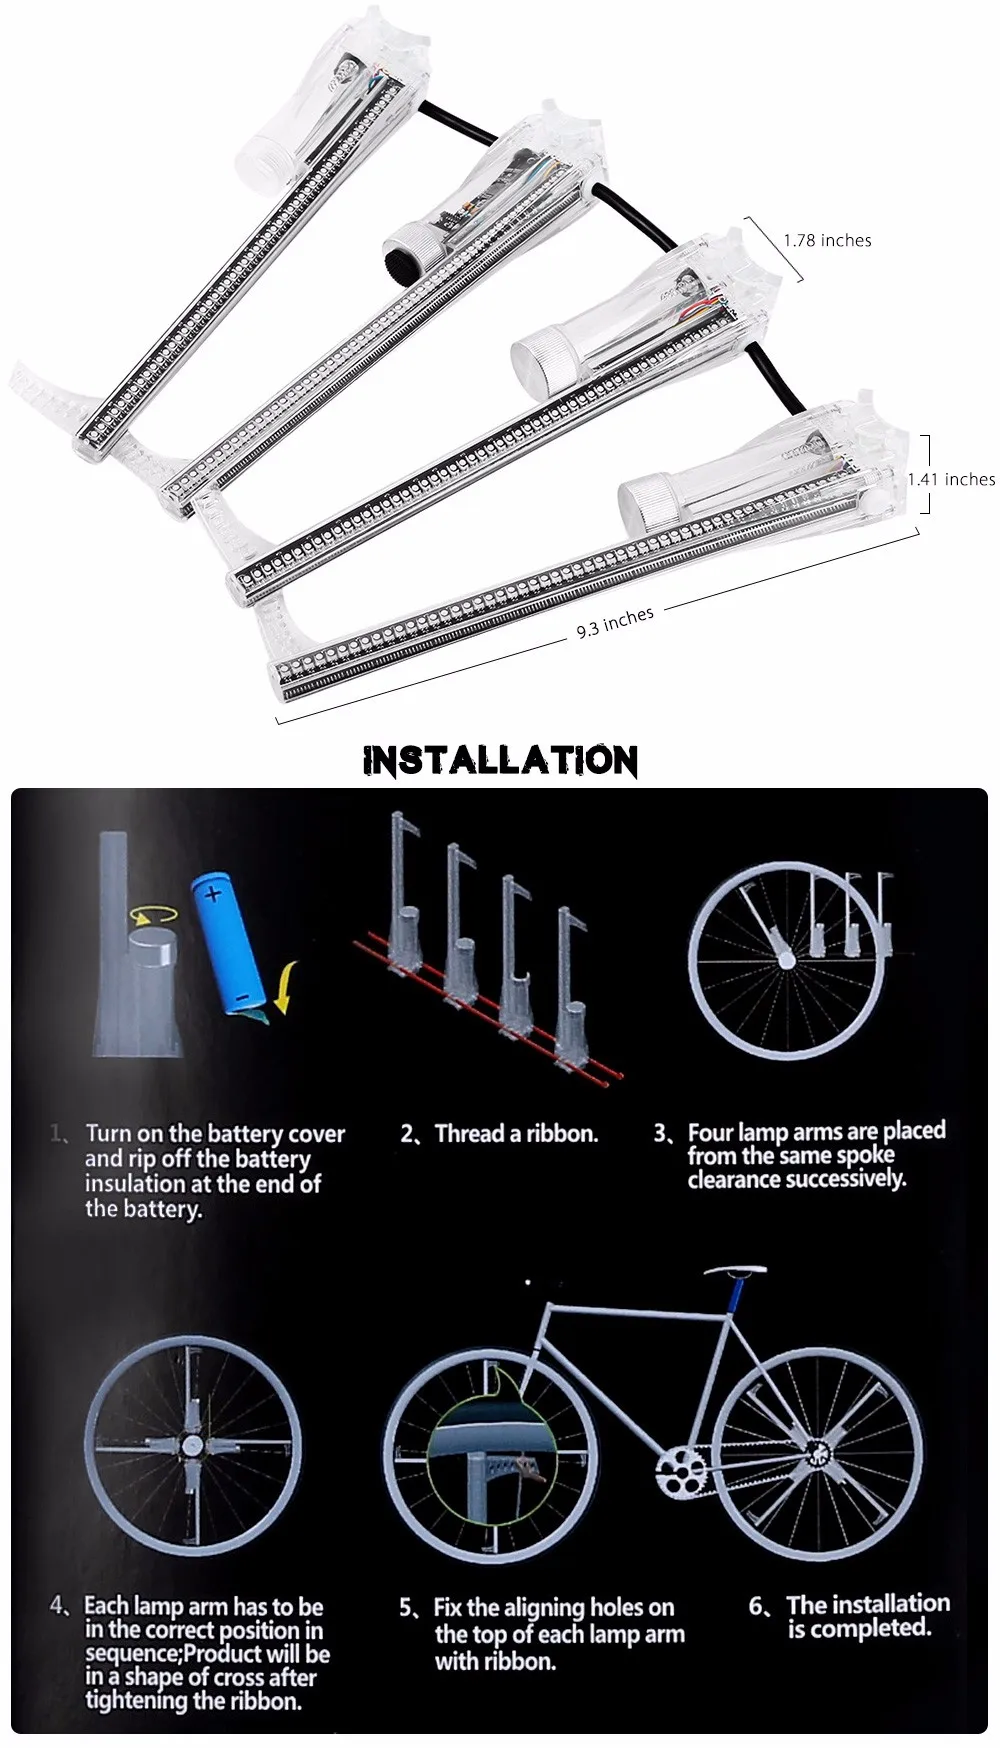 Велосипедный светильник для велосипеда Cycle Zone Pro DIY 416/256 светодиодов, водонепроницаемый, красочный, изменяющий видео-изображение, велосипедный фонарь со спицами, велосипедный светильник